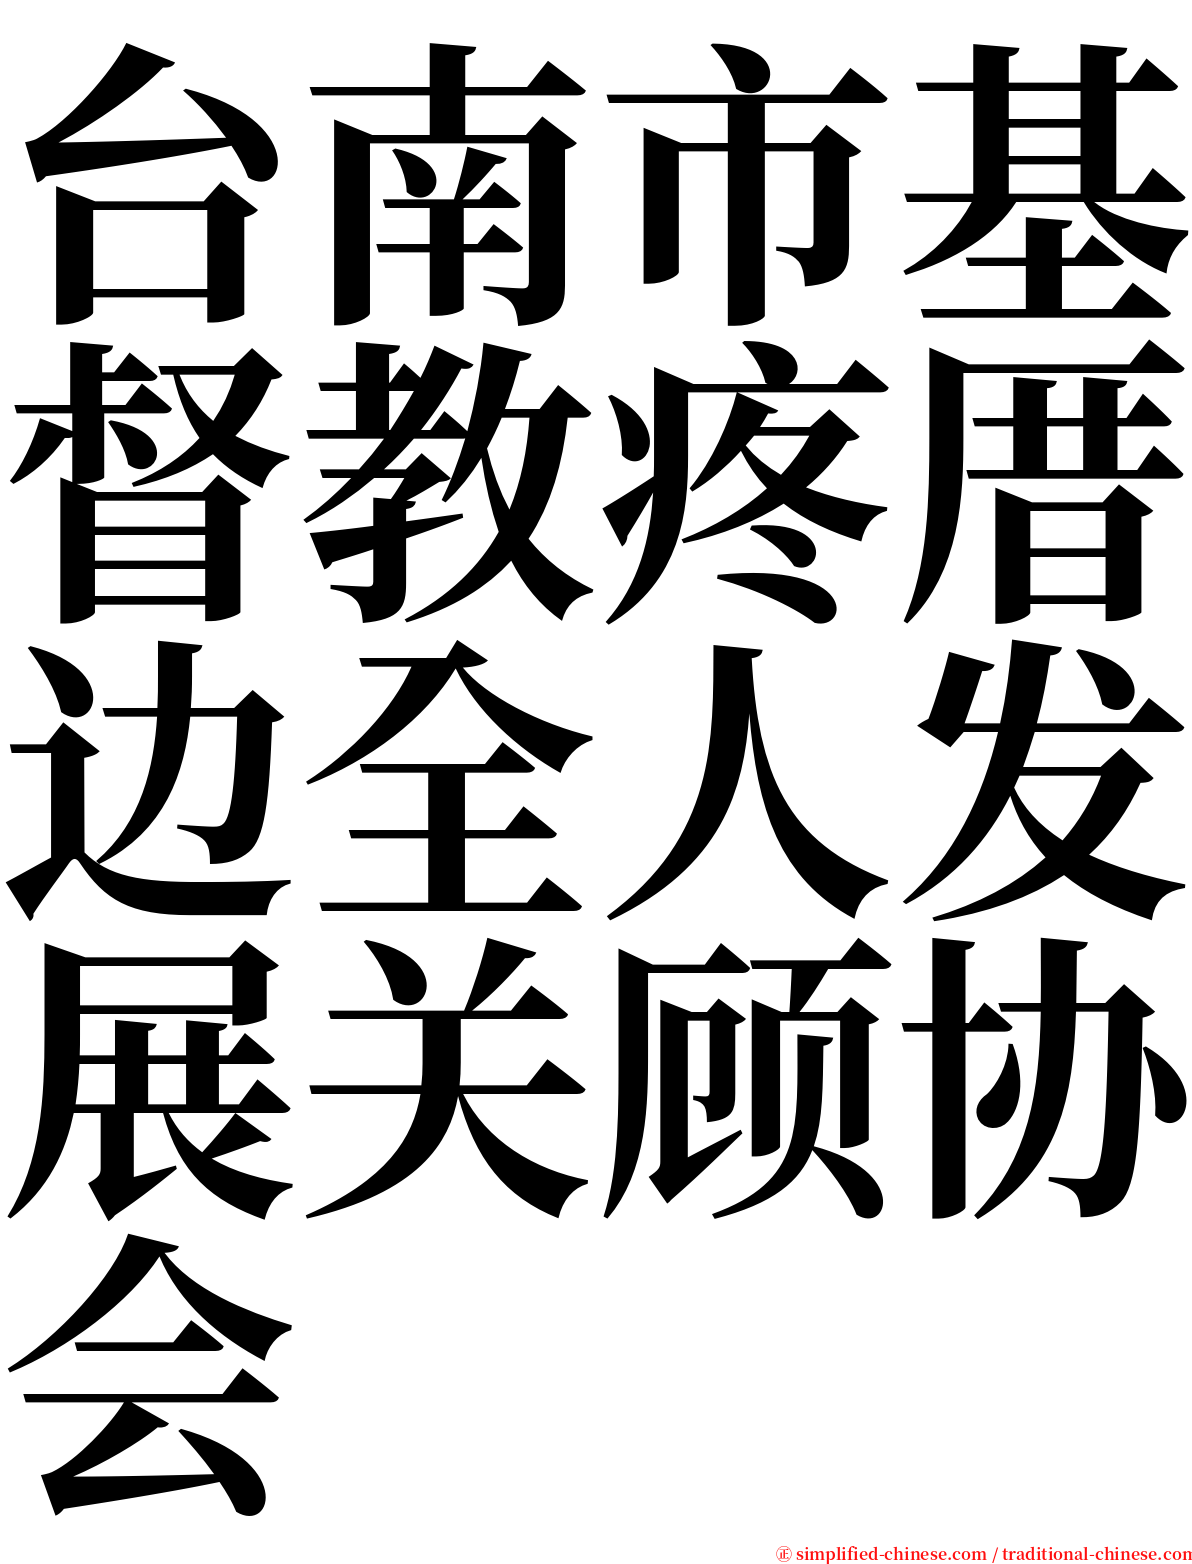 台南市基督教疼厝边全人发展关顾协会 serif font